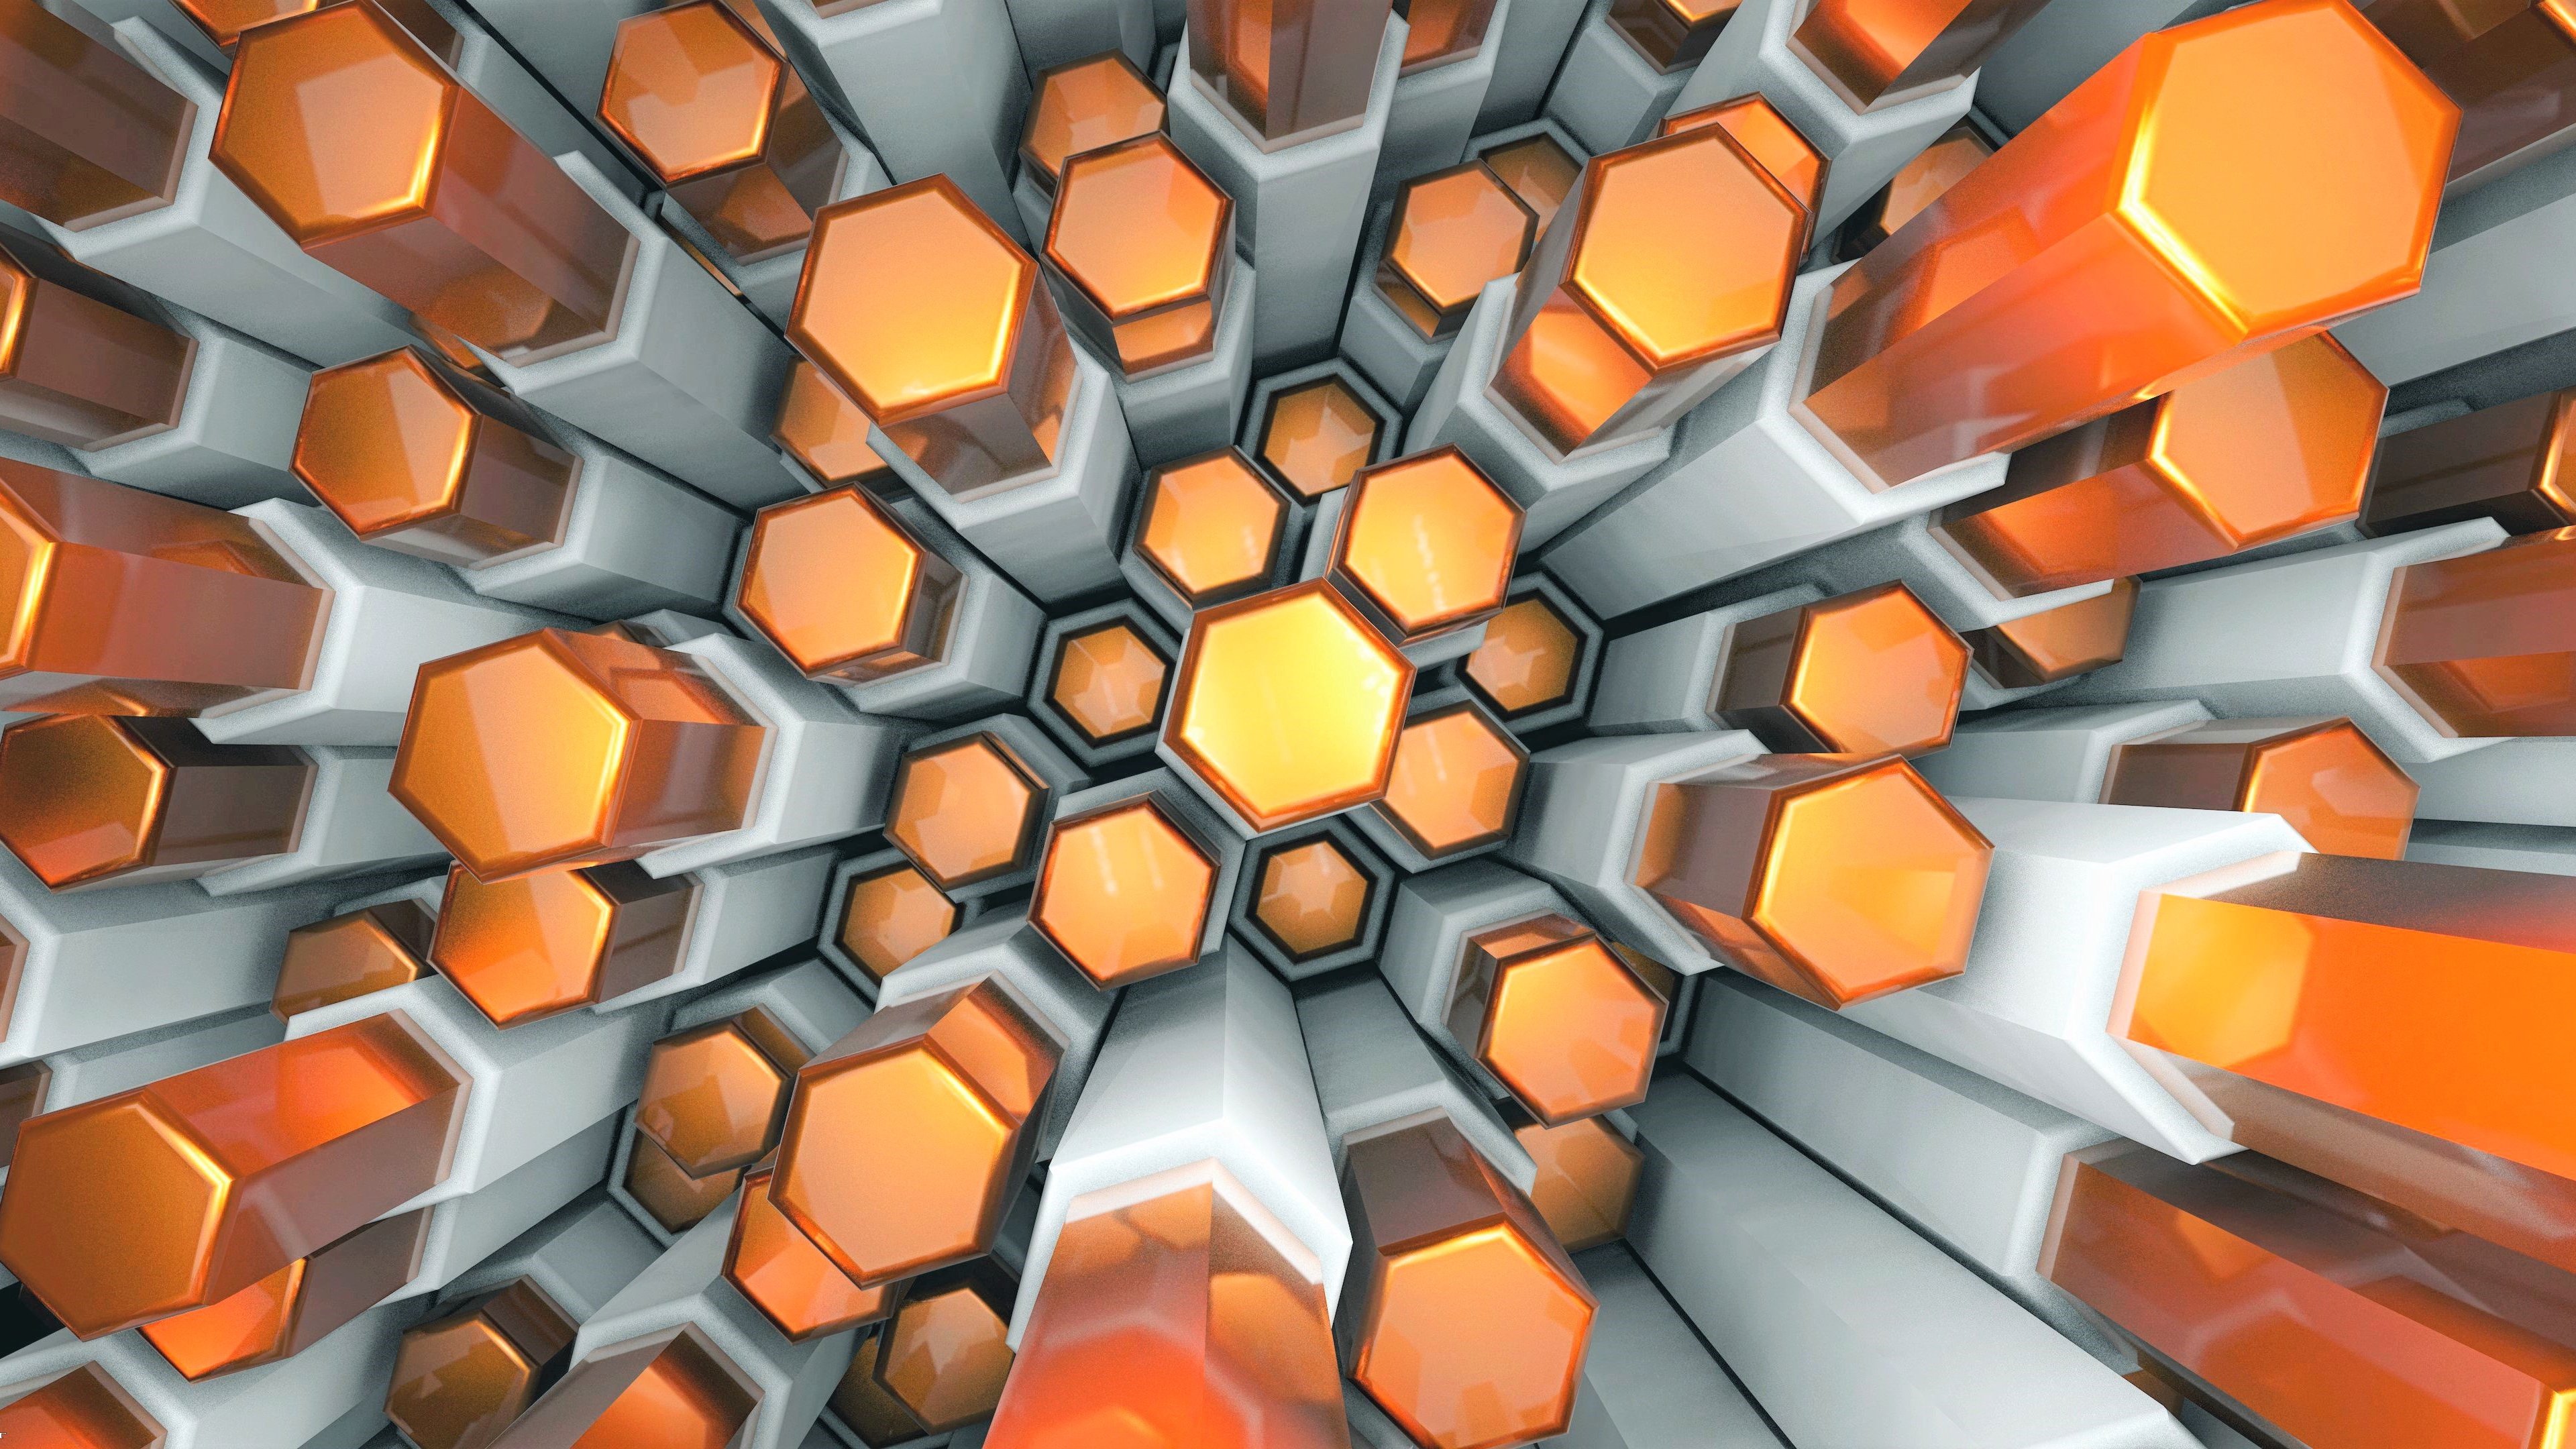 Wallpaper Texture of hexagons